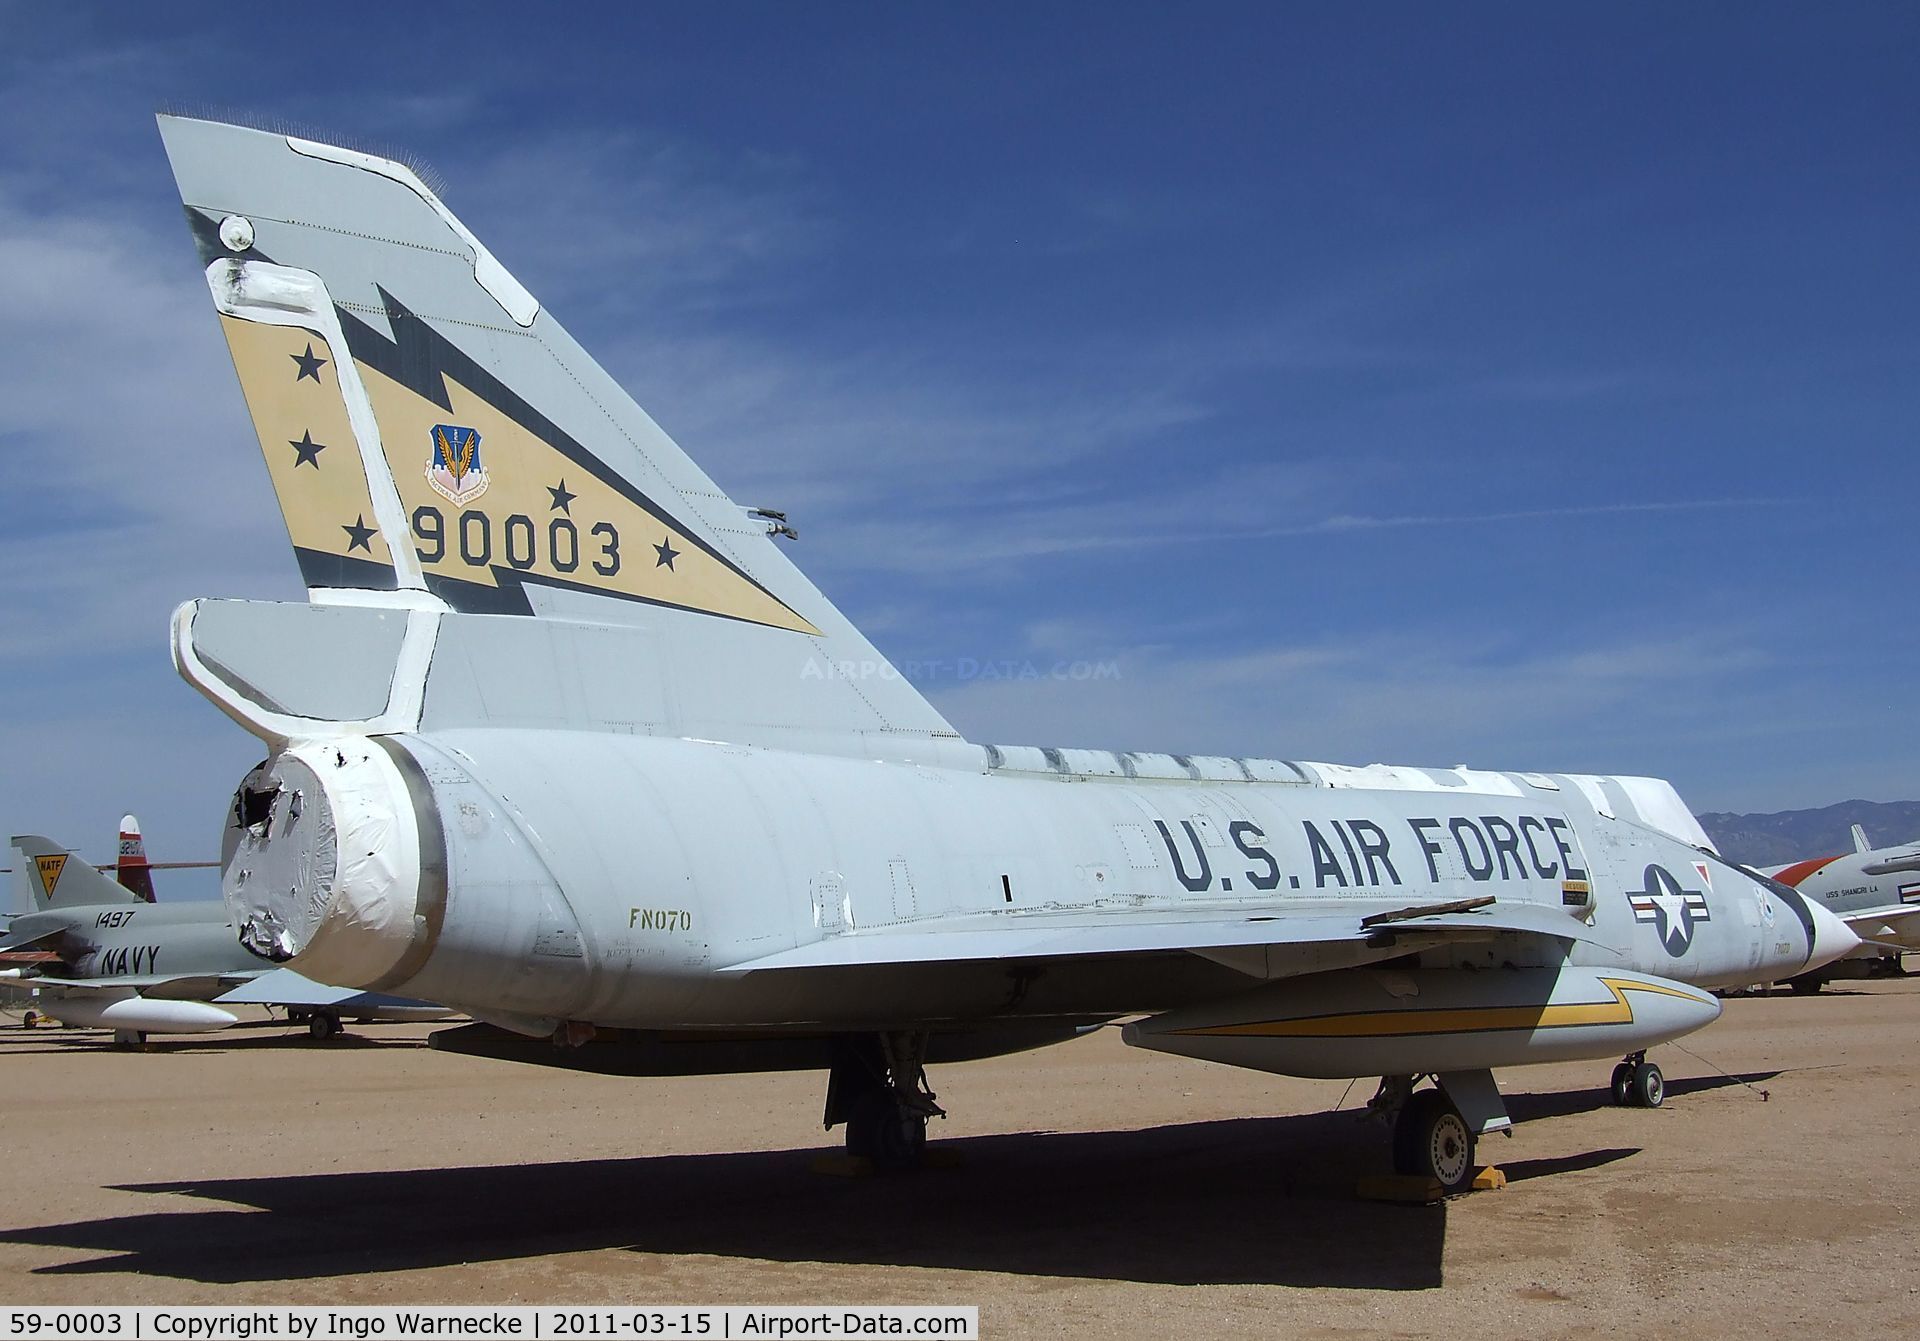 59-0003, 1959 Convair F-106A Delta Dart C/N 8-14-132, Convair F-106A Delta Dart at the Pima Air & Space Museum, Tucson AZ